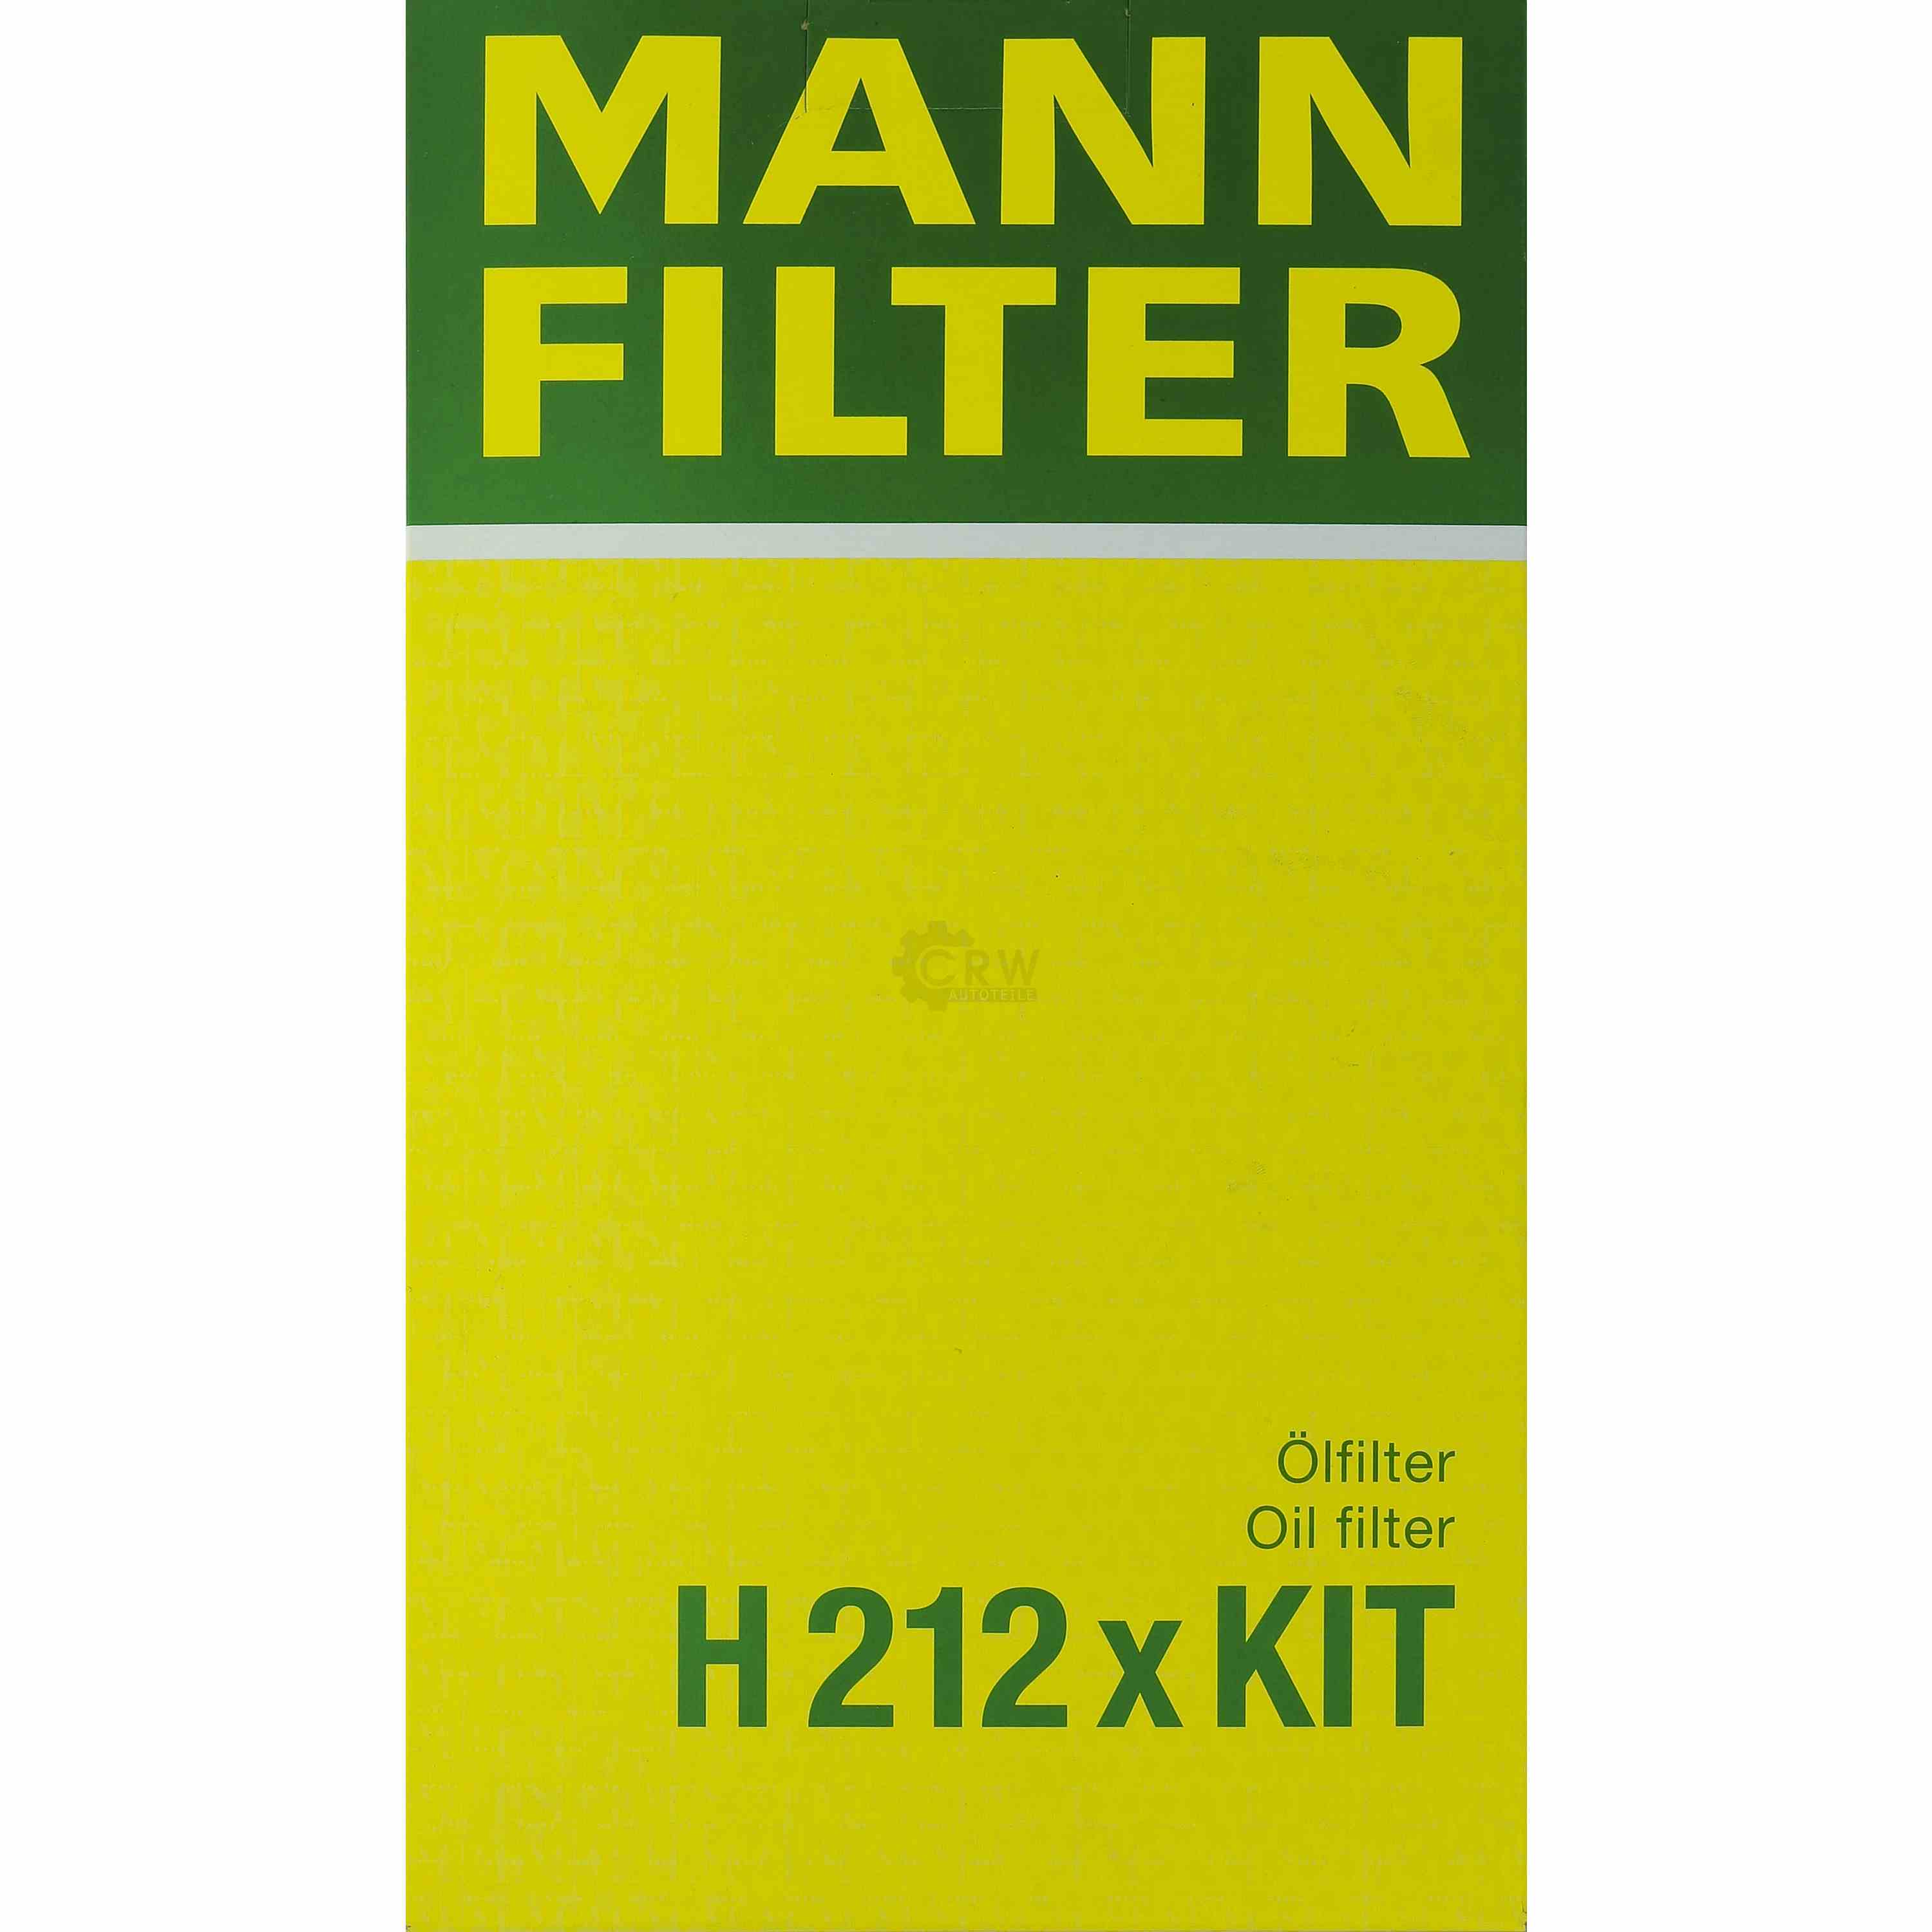 MANN-FILTER Getriebeölfilter für Automatikgetriebe H 212 x KIT Renault Car